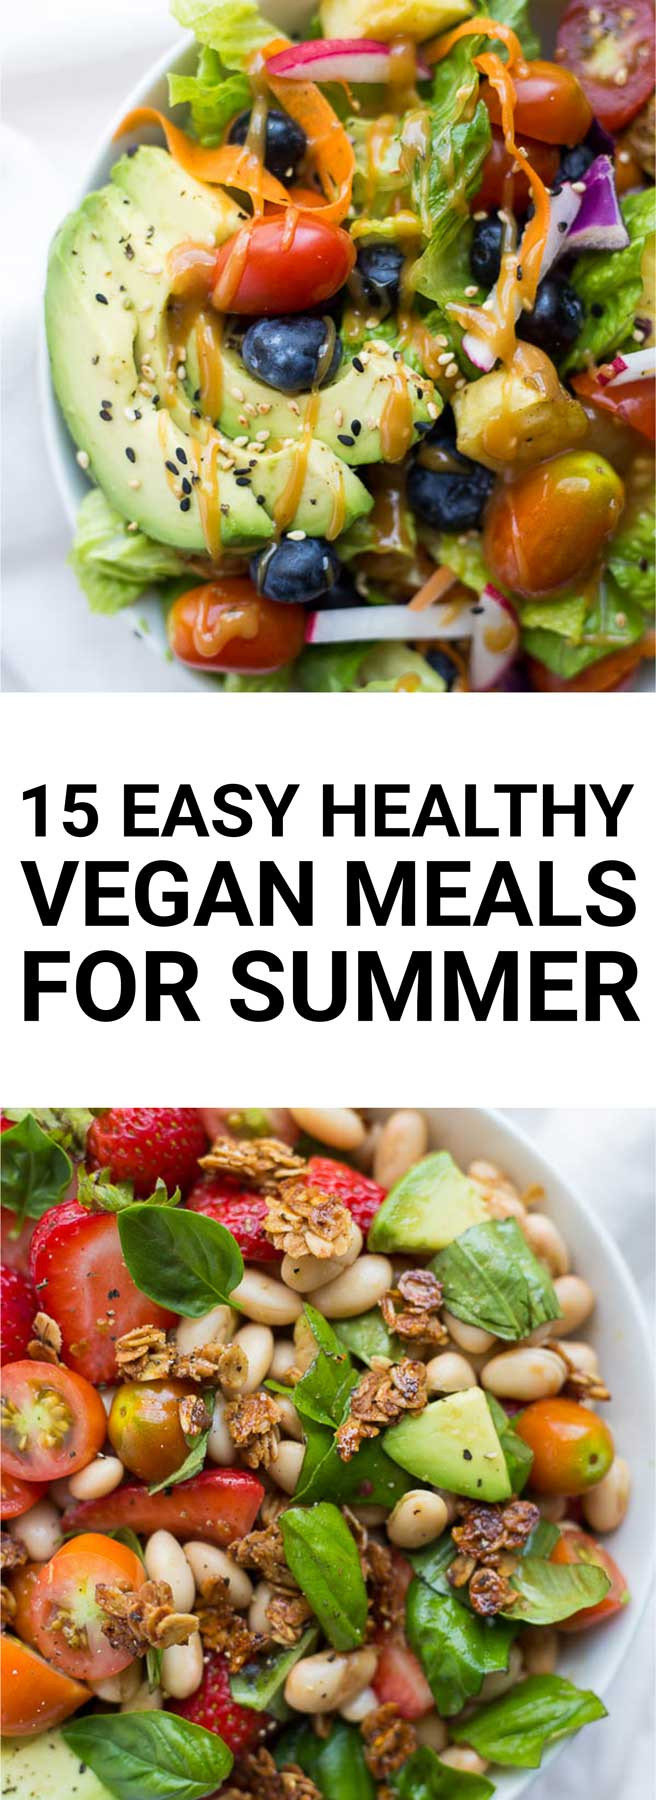 Summer Vegan Recipes
 15 Easy Healthy Vegan Meals for Summer Fooduzzi